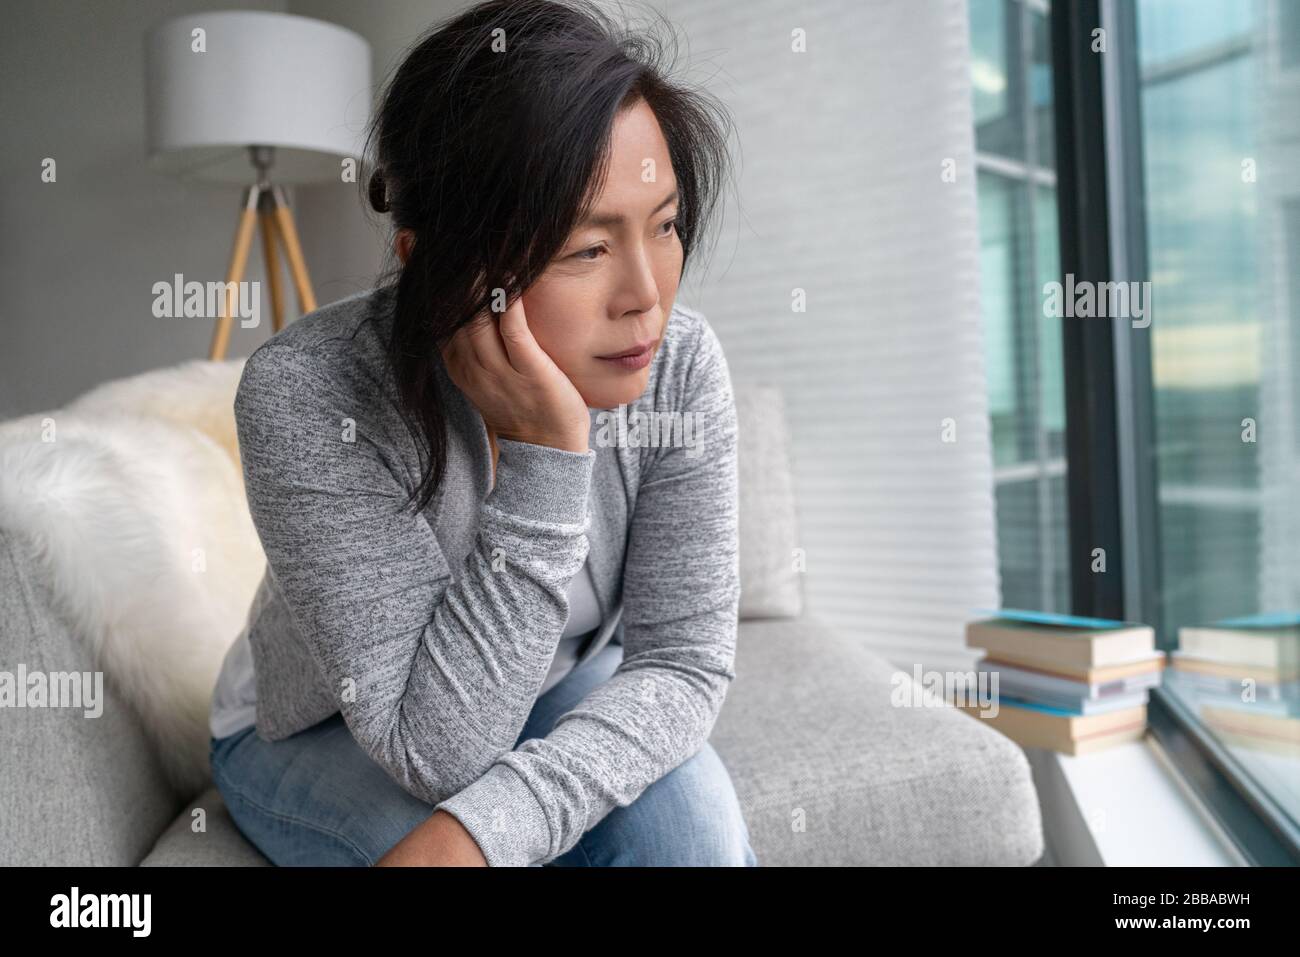 Traurige asiatische reife Frau einsam zu Hause Selbstisolation Quarantäne für COVID-19 Coronavirus soziale Distanzierung Prävention. Mentale Gesundheit, Angst depressiv denkend, hohe chinesische Dame. Stockfoto